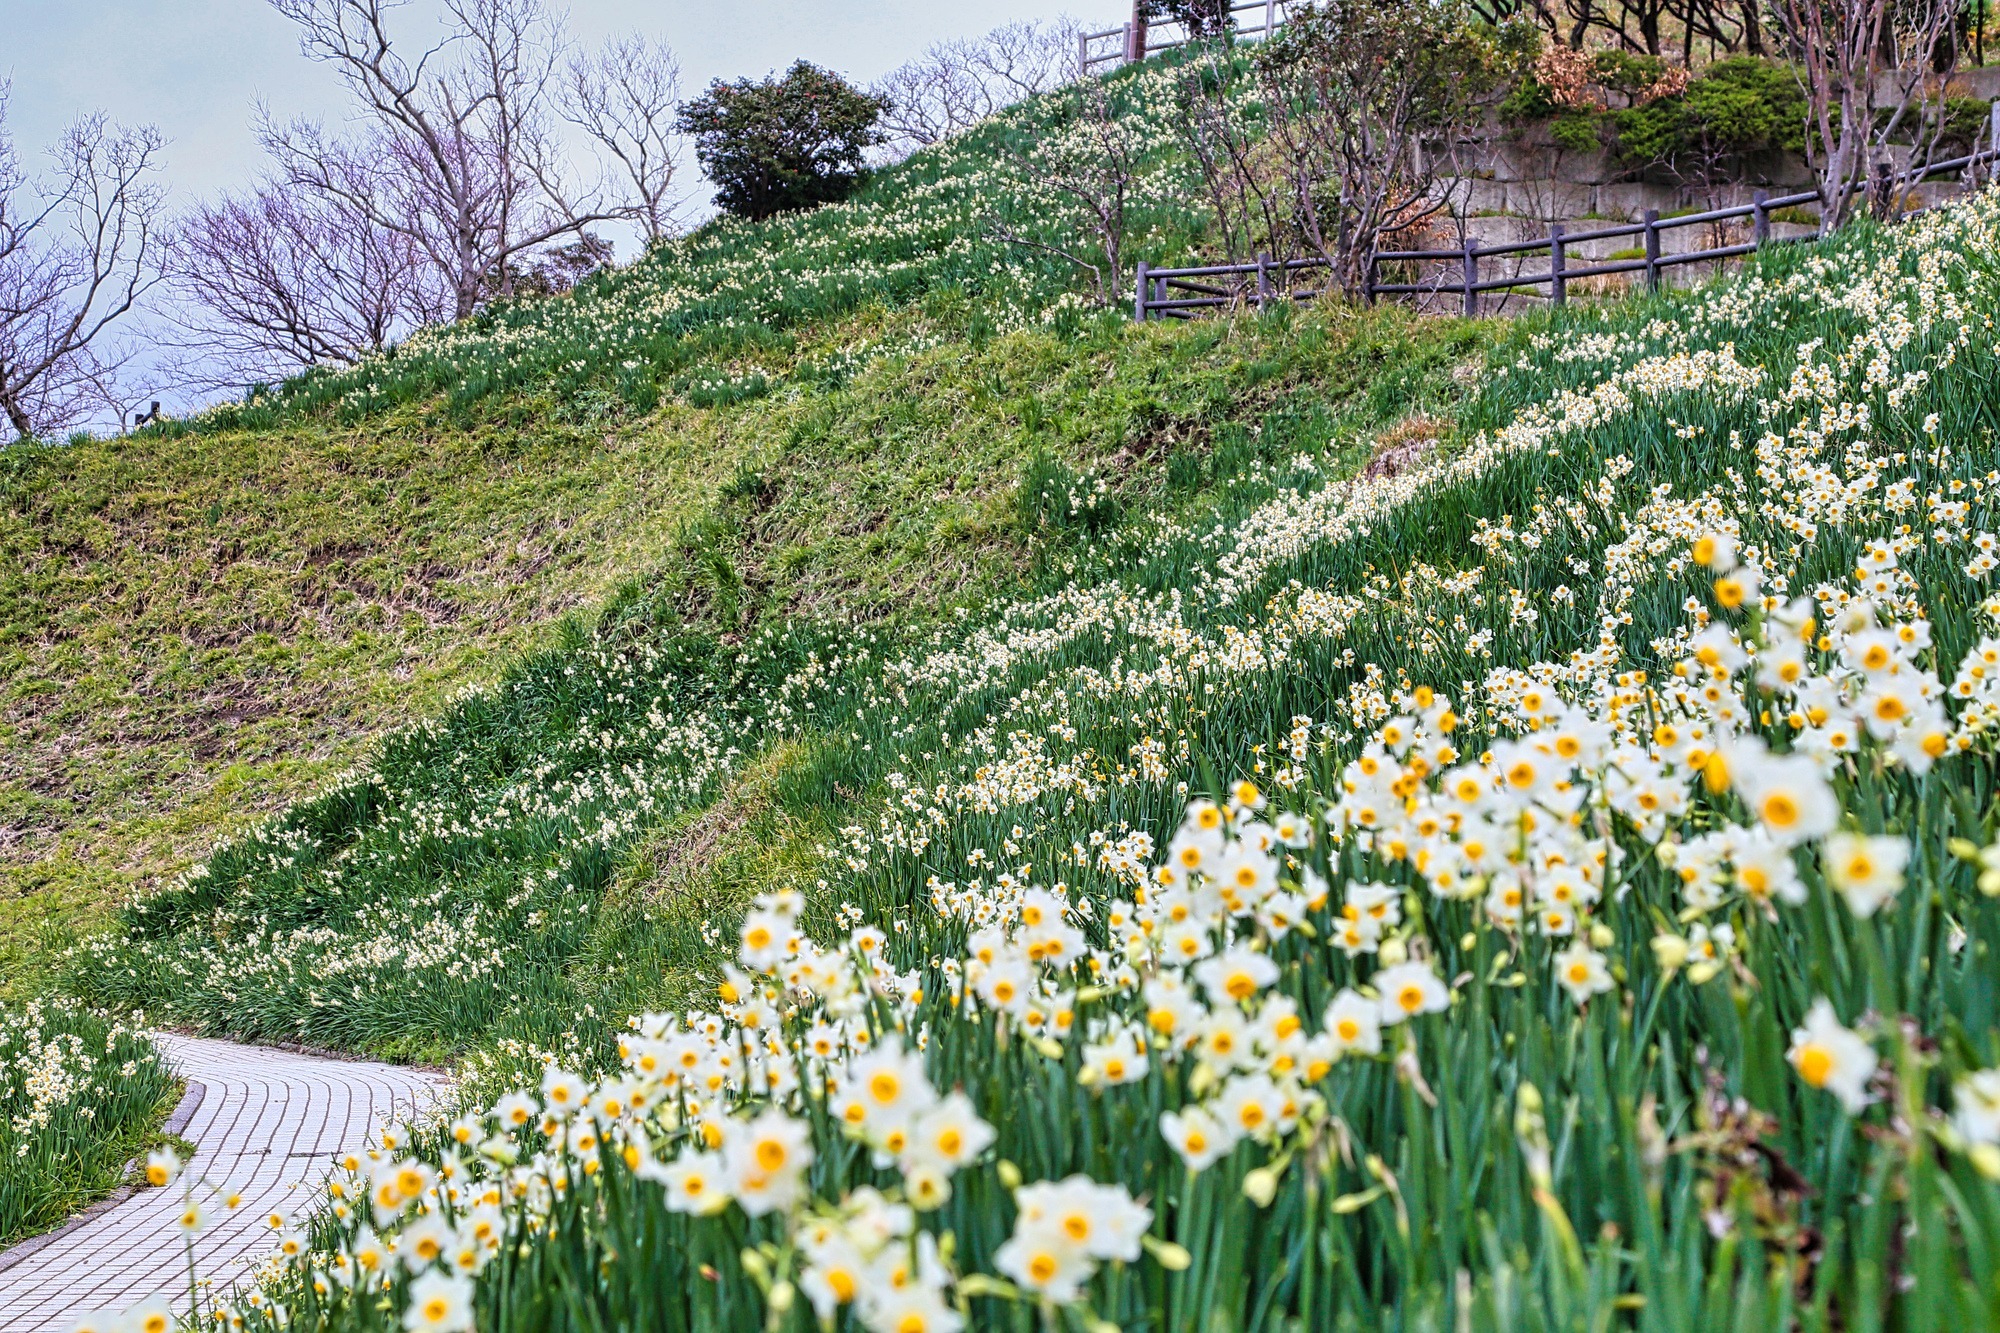 日本三大水仙群生地、越前海岸が咲き誇る「越前水仙ランド」